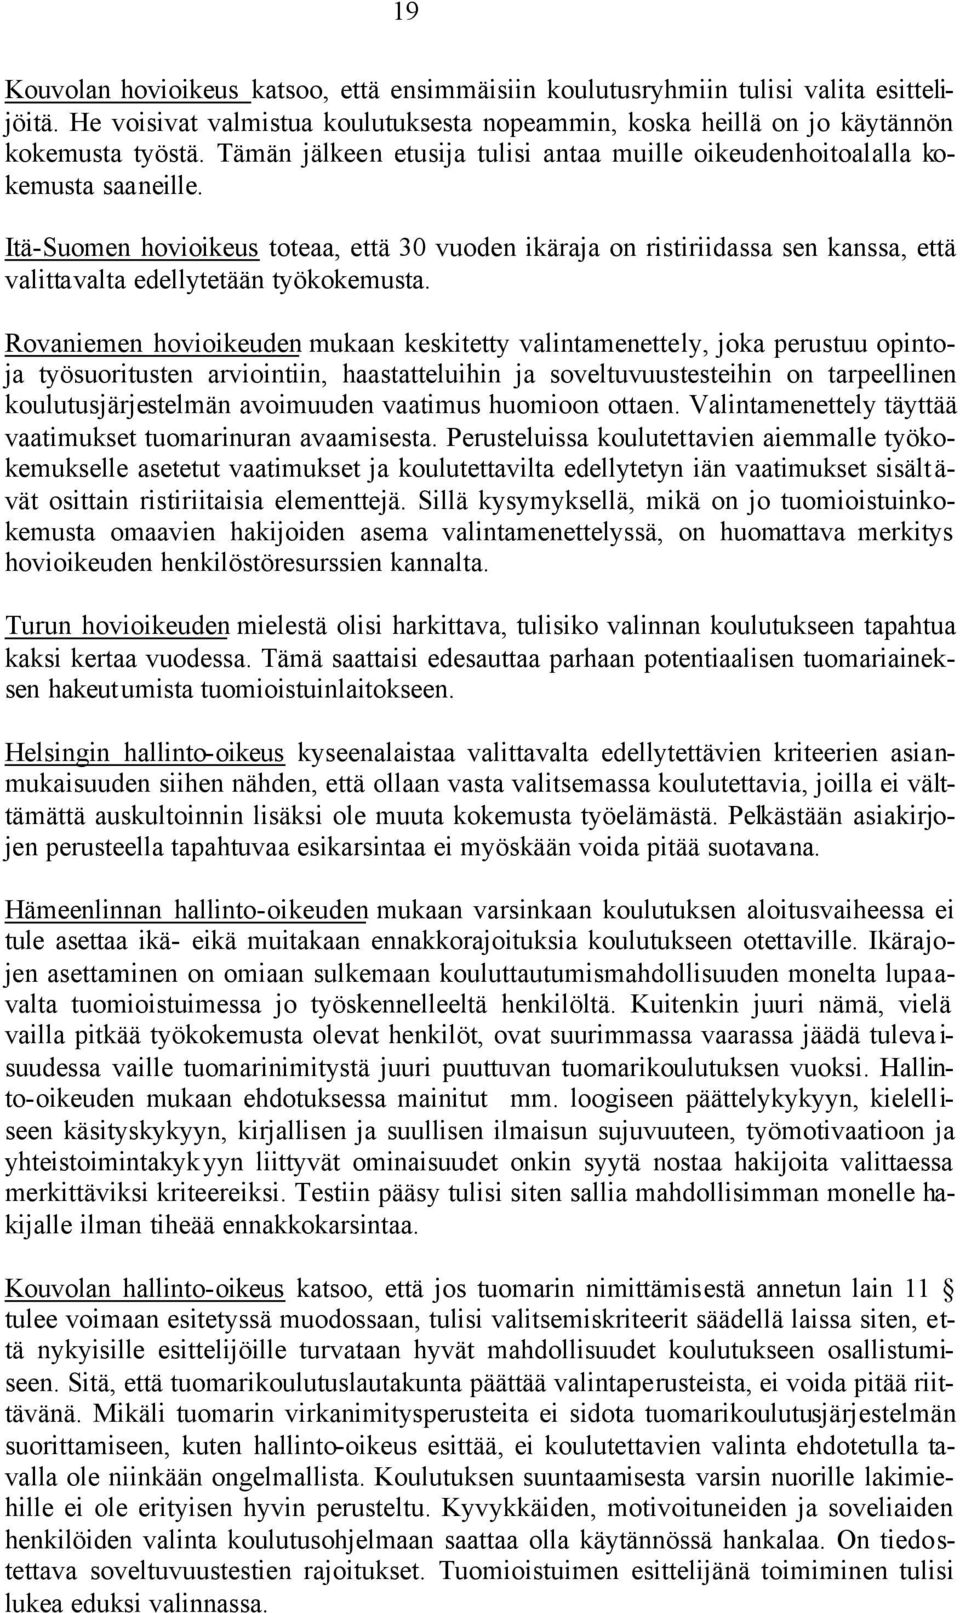 Itä-Suomen hovioikeus toteaa, että 30 vuoden ikäraja on ristiriidassa sen kanssa, että valittavalta edellytetään työkokemusta.